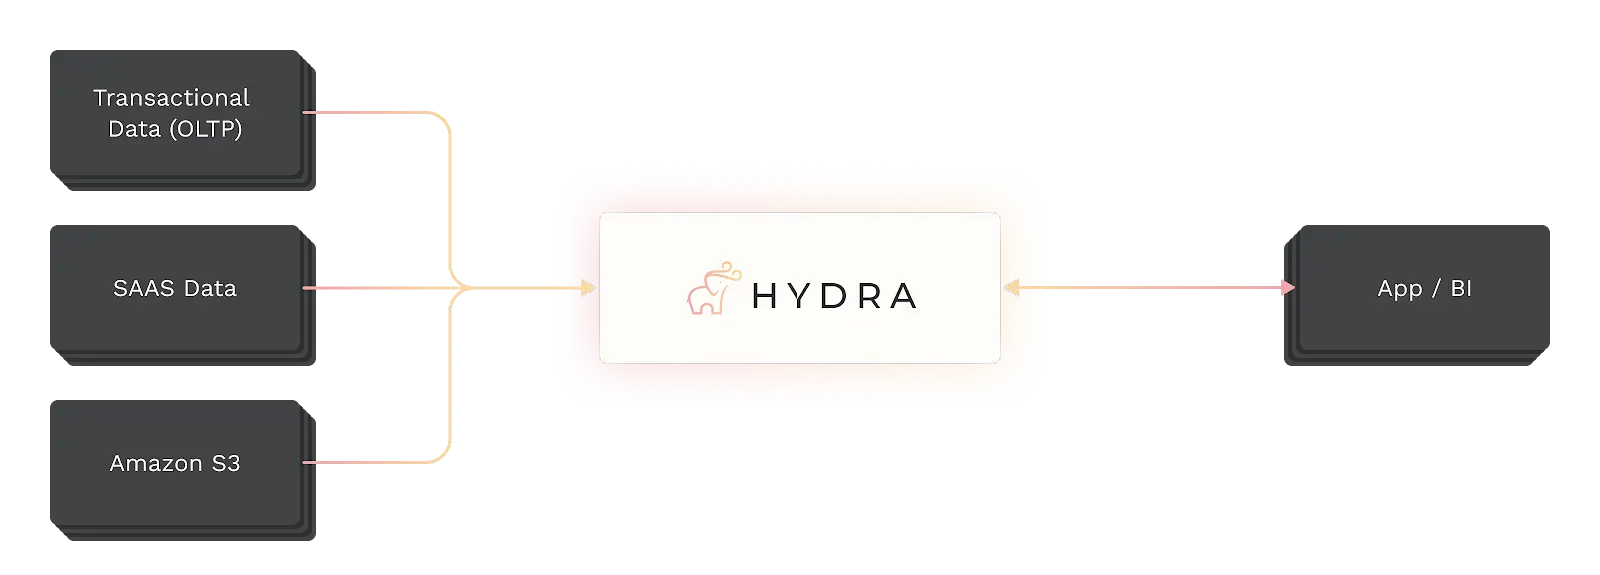 hydra-architecture